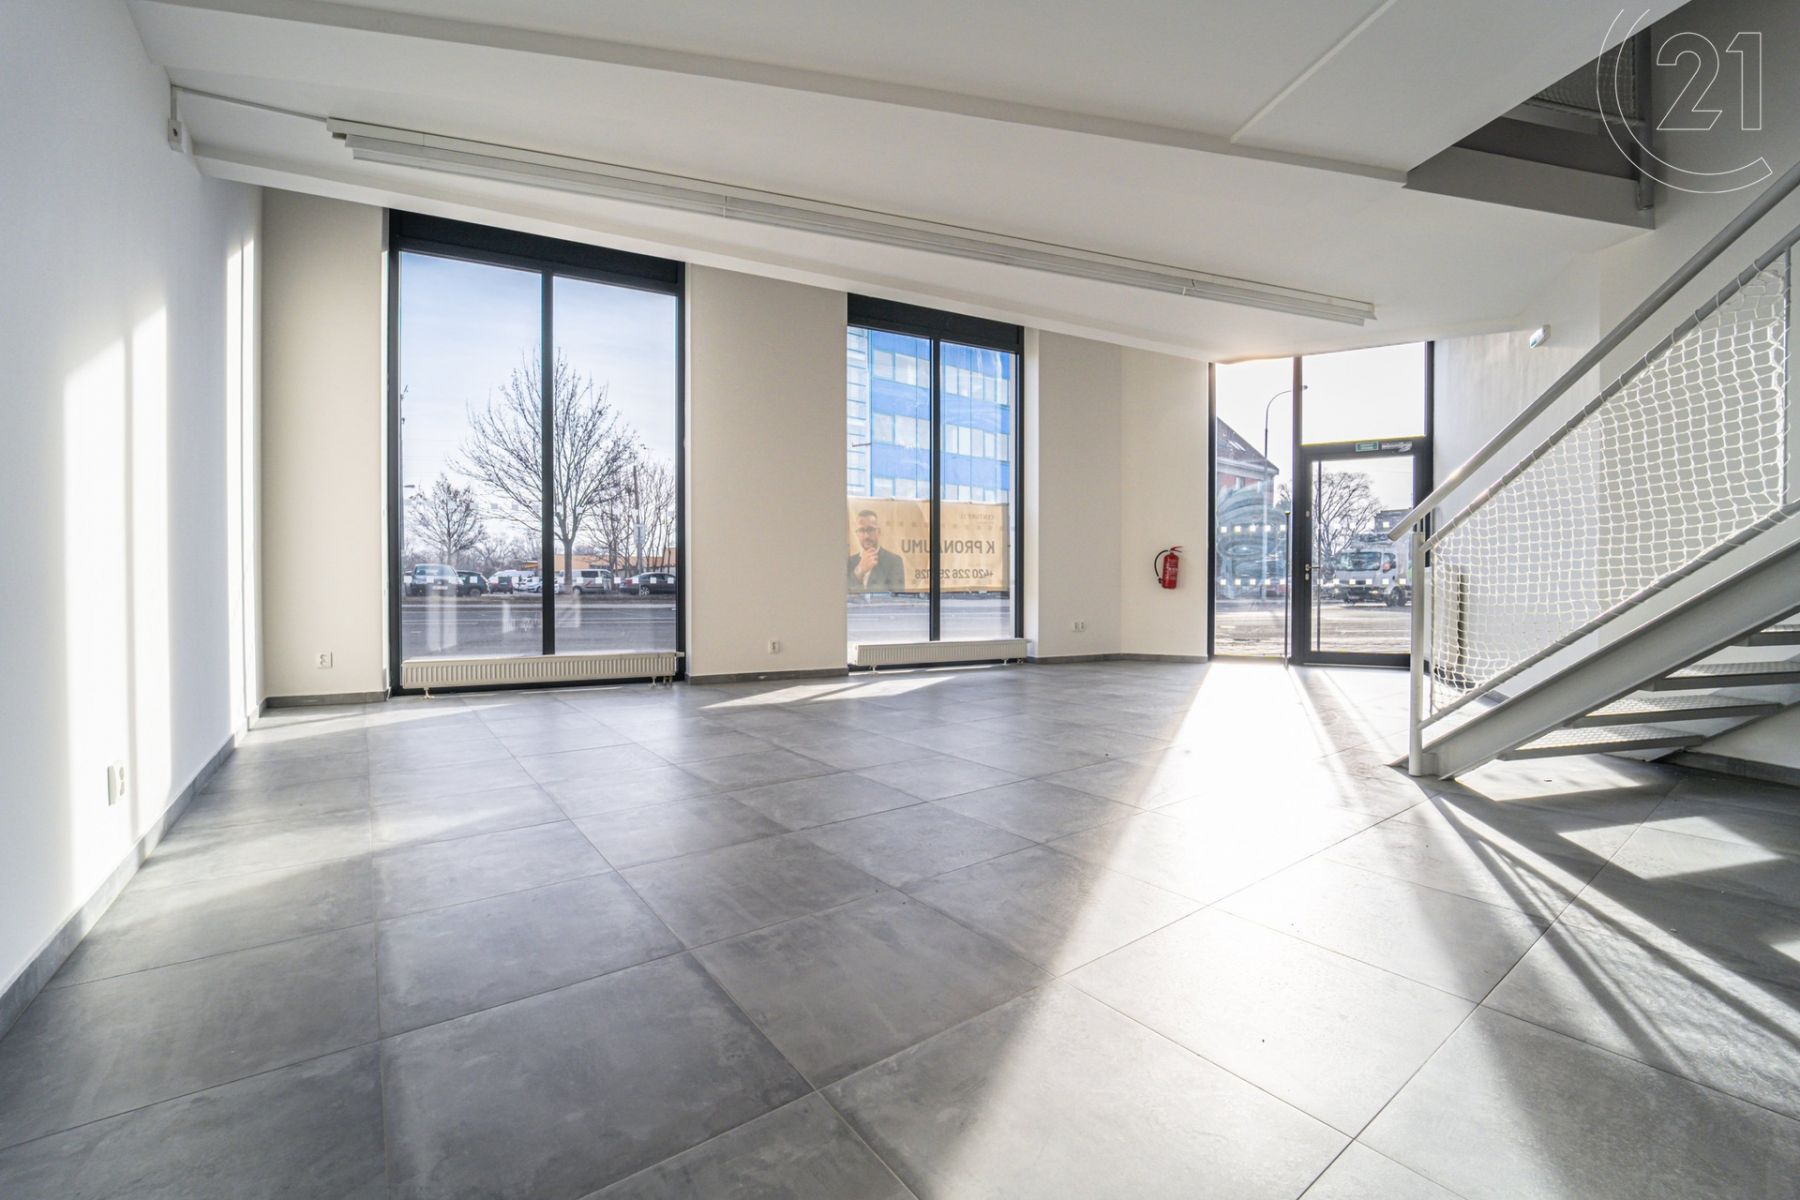 Kancelářské prostory ke koupi o celkové ploše 232m2 v rohovém domě na frekventované ulici Mlýnská v , obrázek č. 1